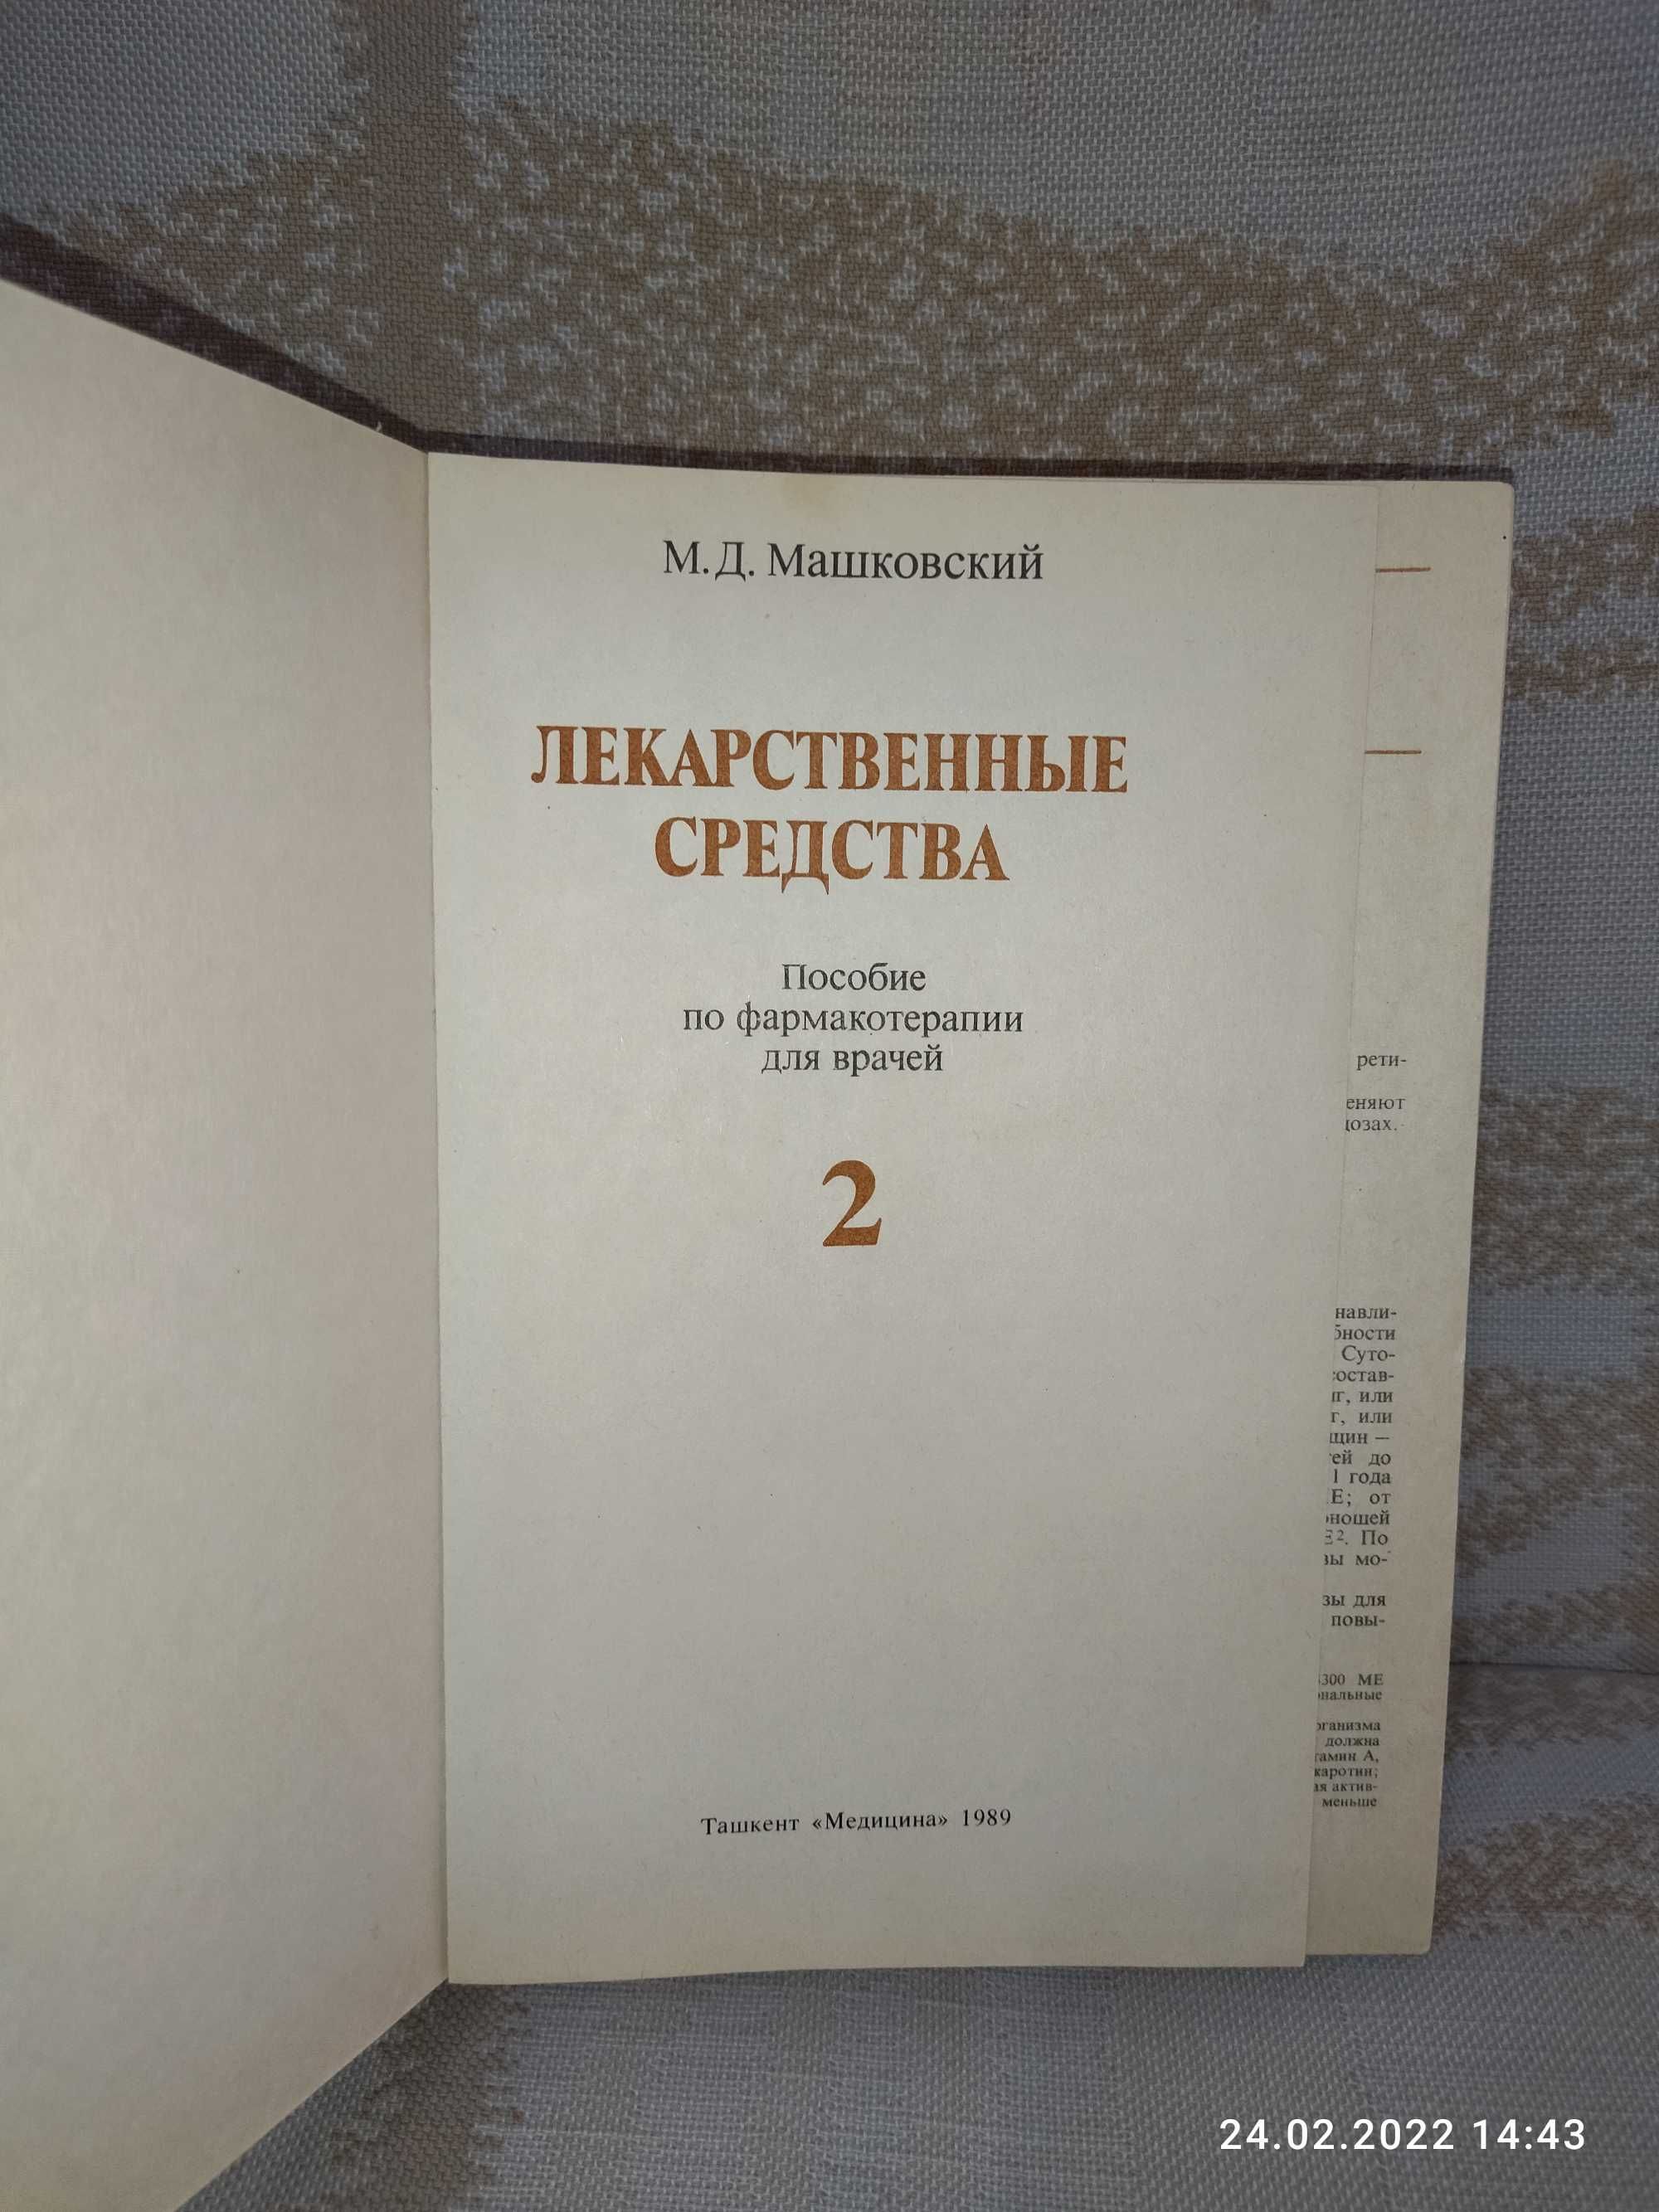 Книга "Лекарственные средства" М. Д. Машковский. часть 2